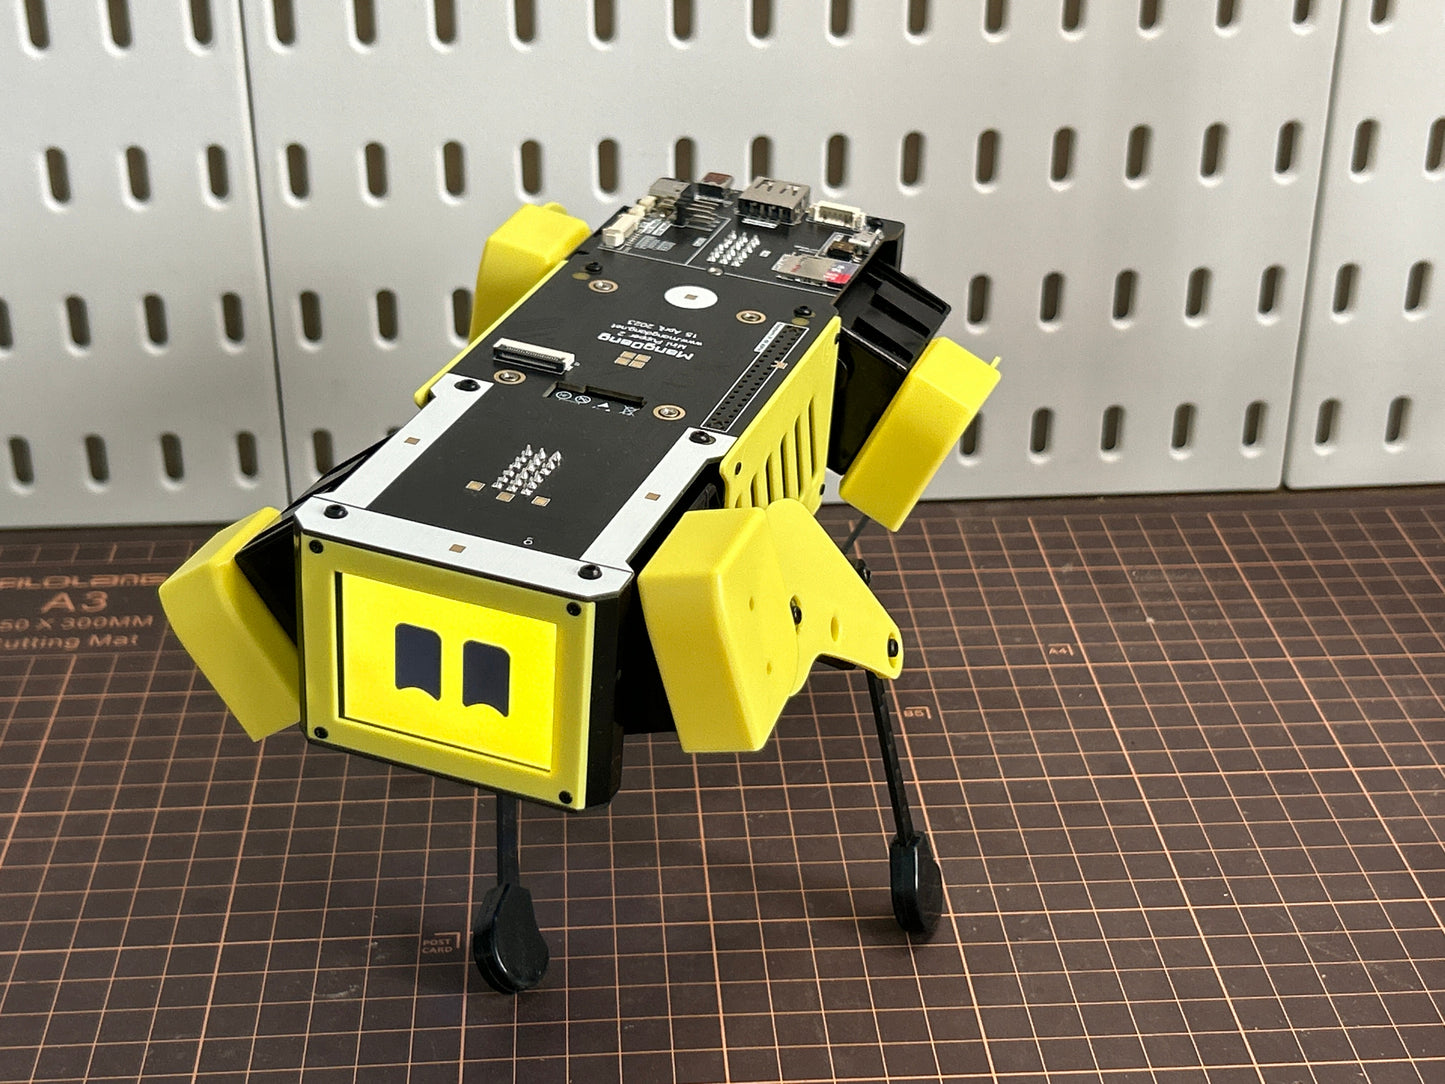 Mini Pupper 2 Education Kit: AI Quadruped Robot, Educational Robot